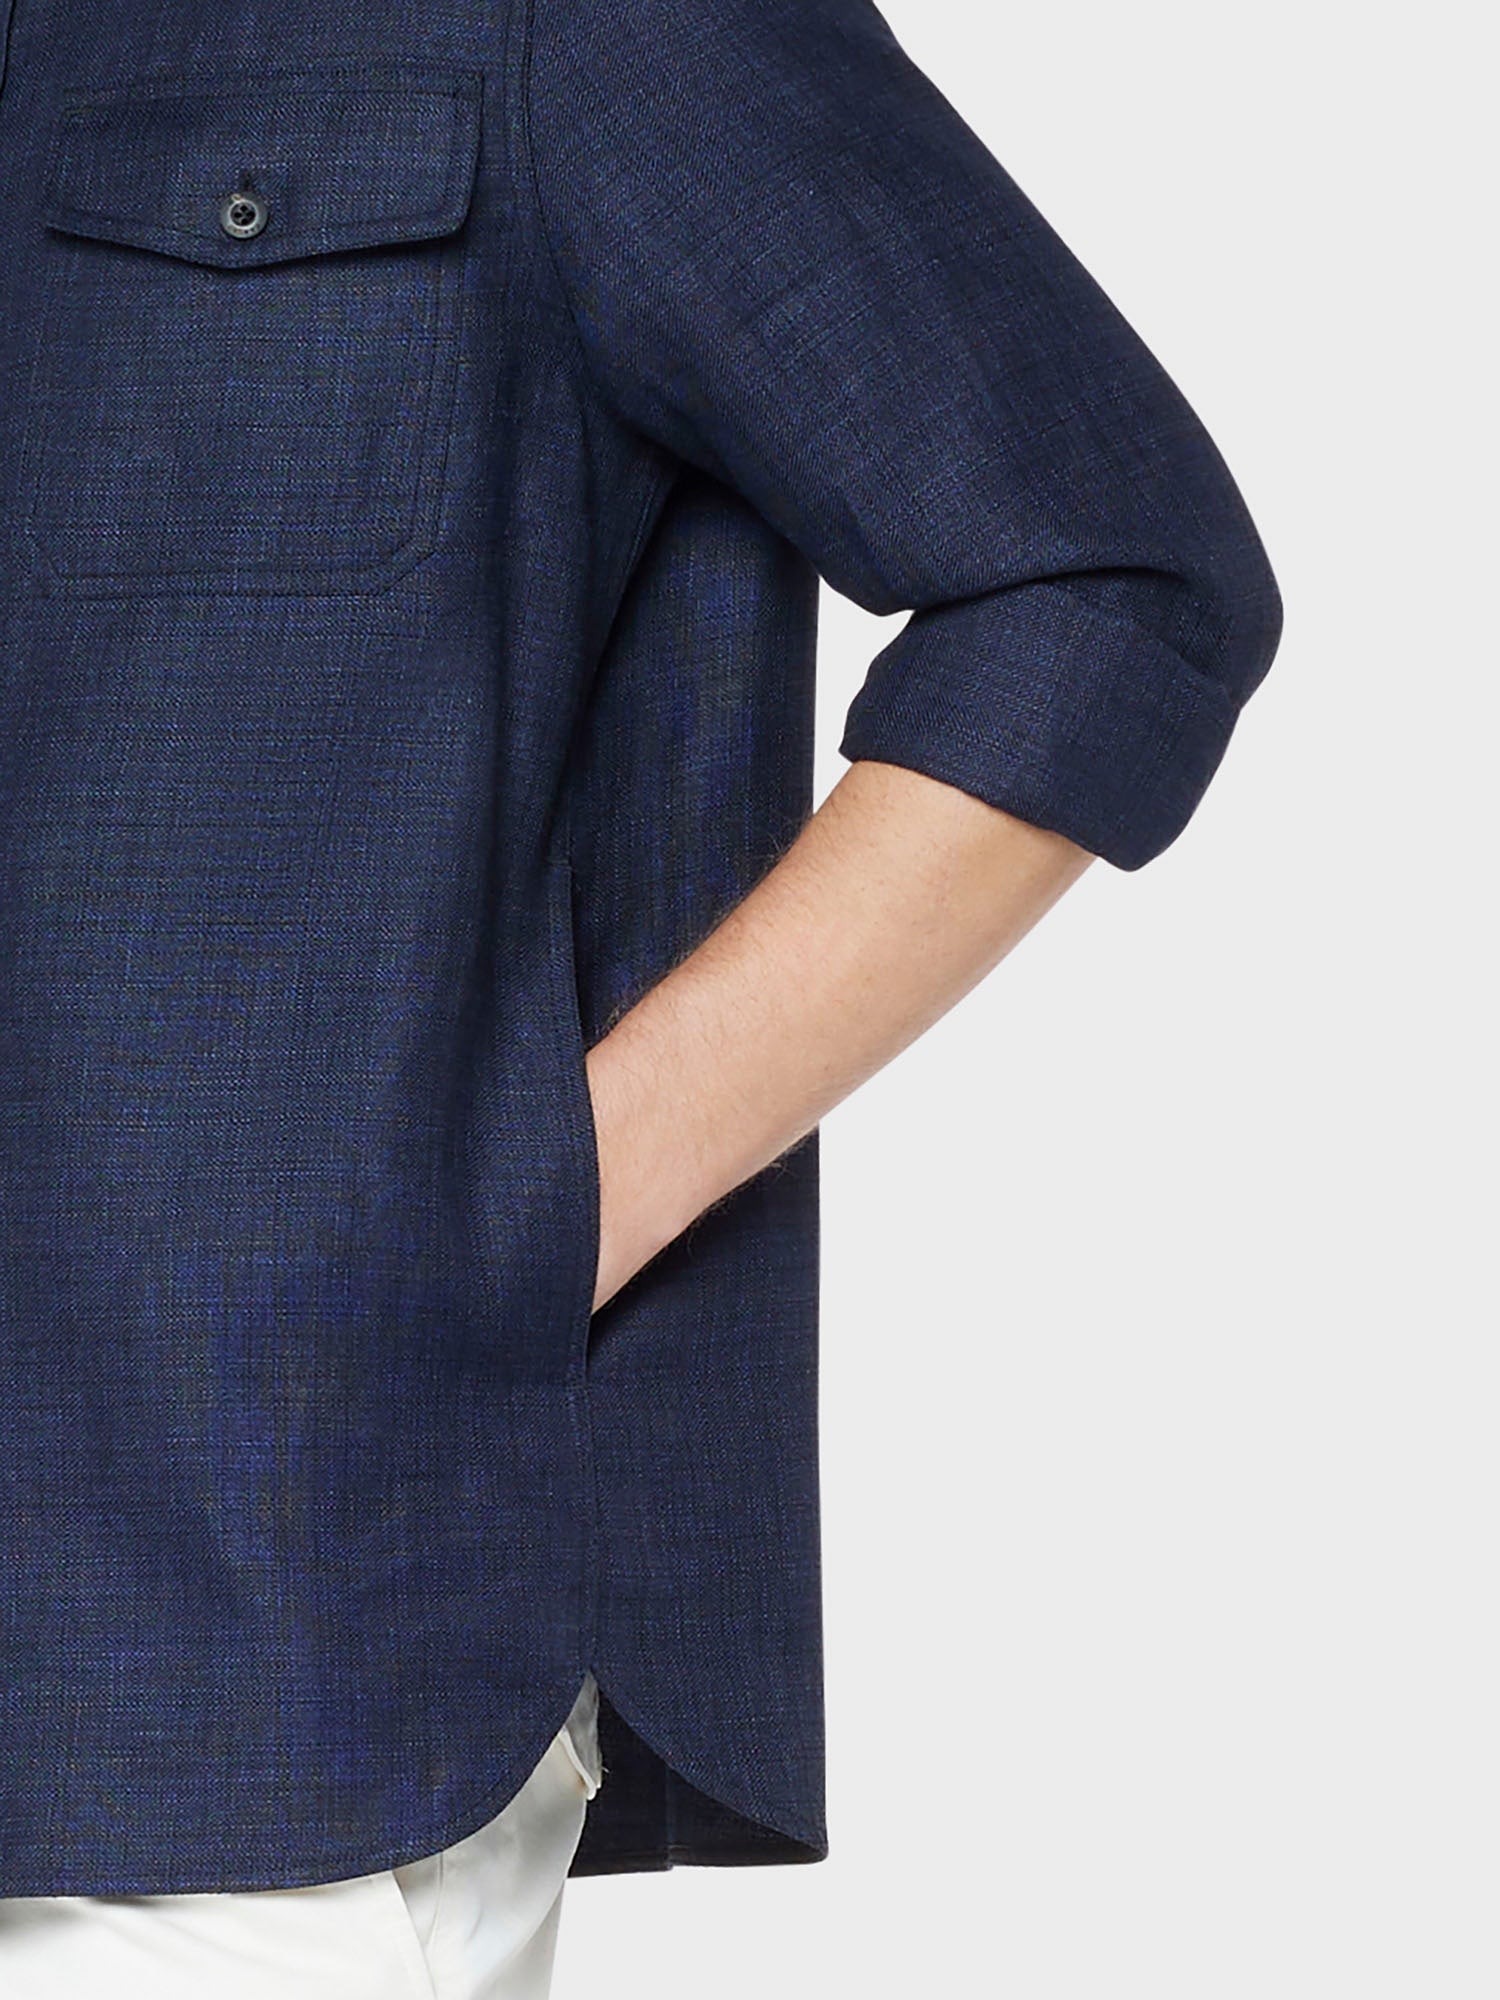 Caruso menswear Abbigliamento Uomo Overshirt estiva in lino e lana blu dettaglio